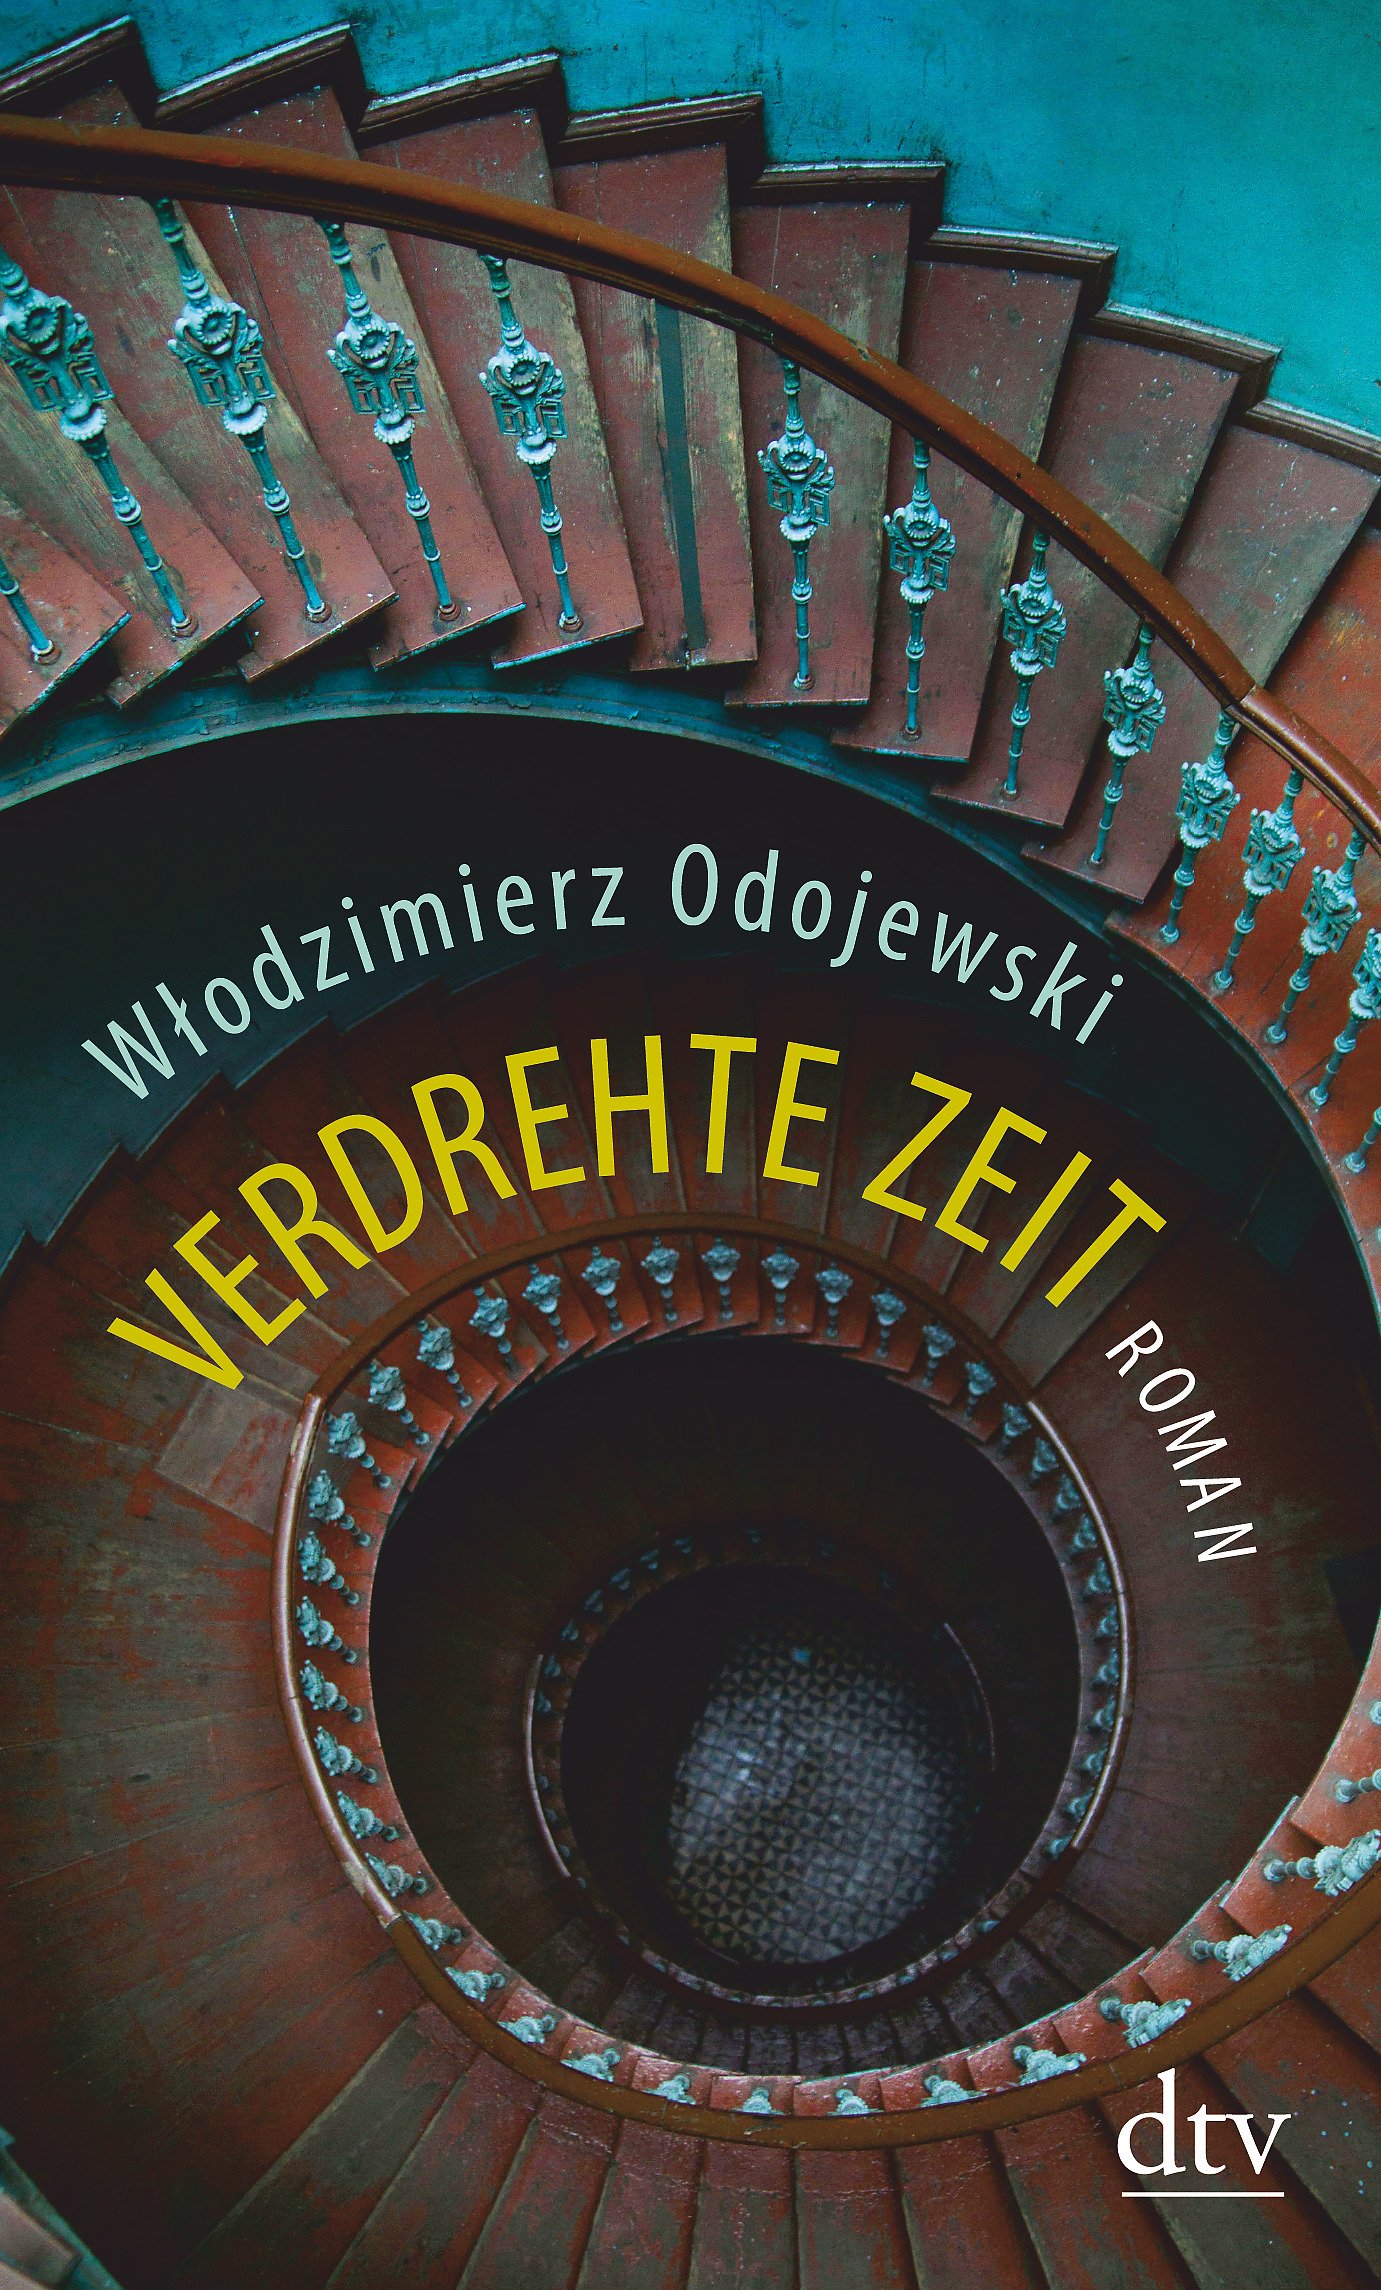 Wlodzimierz Odojewski: Verdrehte Zeit